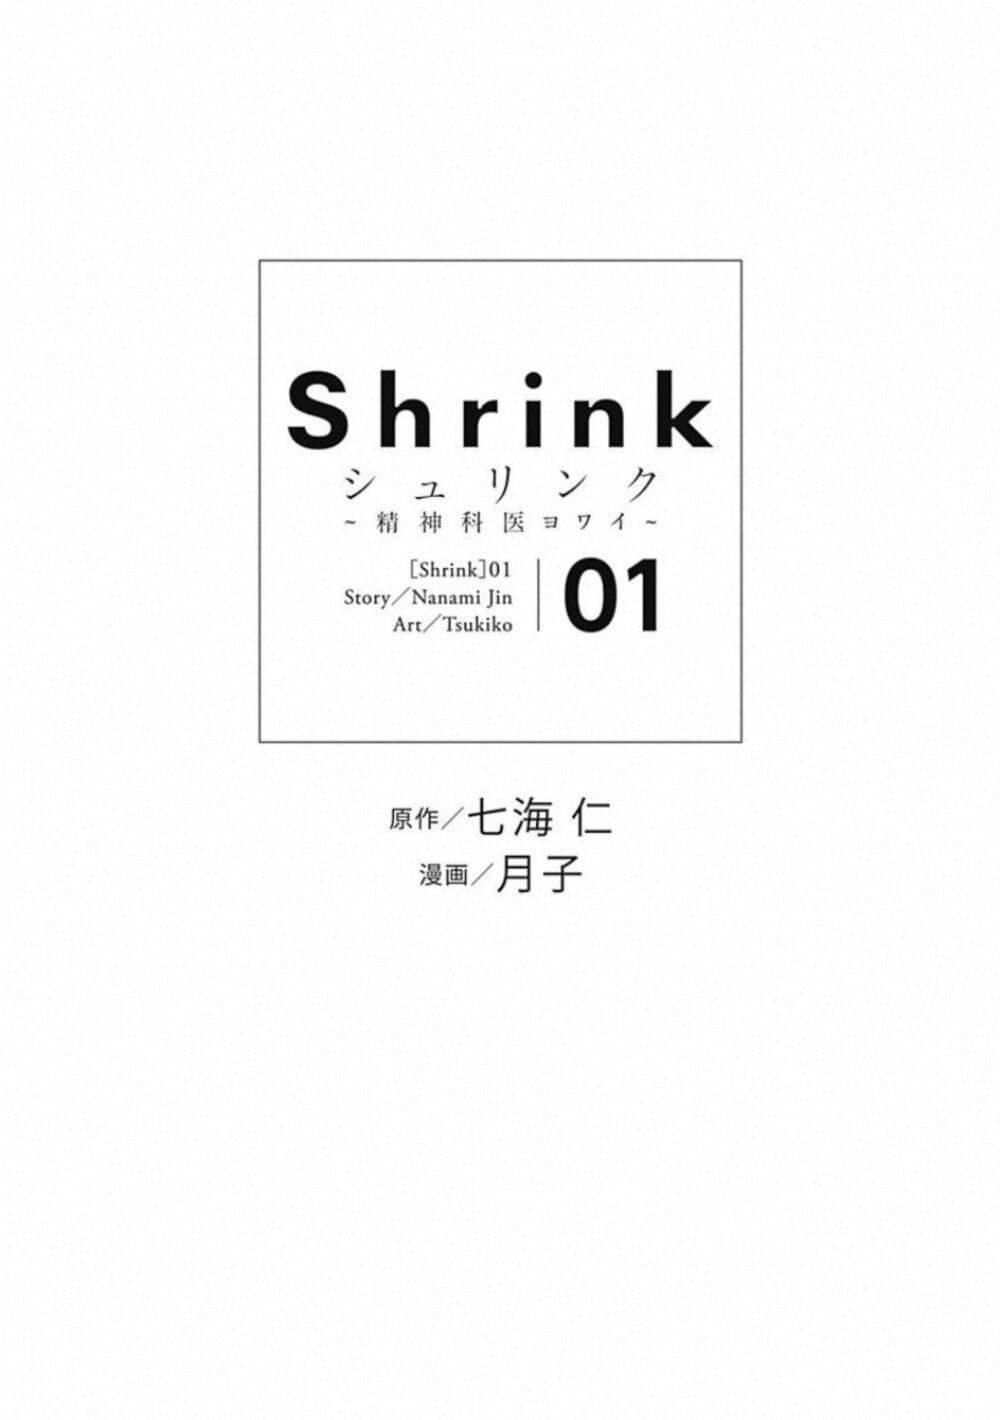 Shrink Seishinkai Yowai 3 04